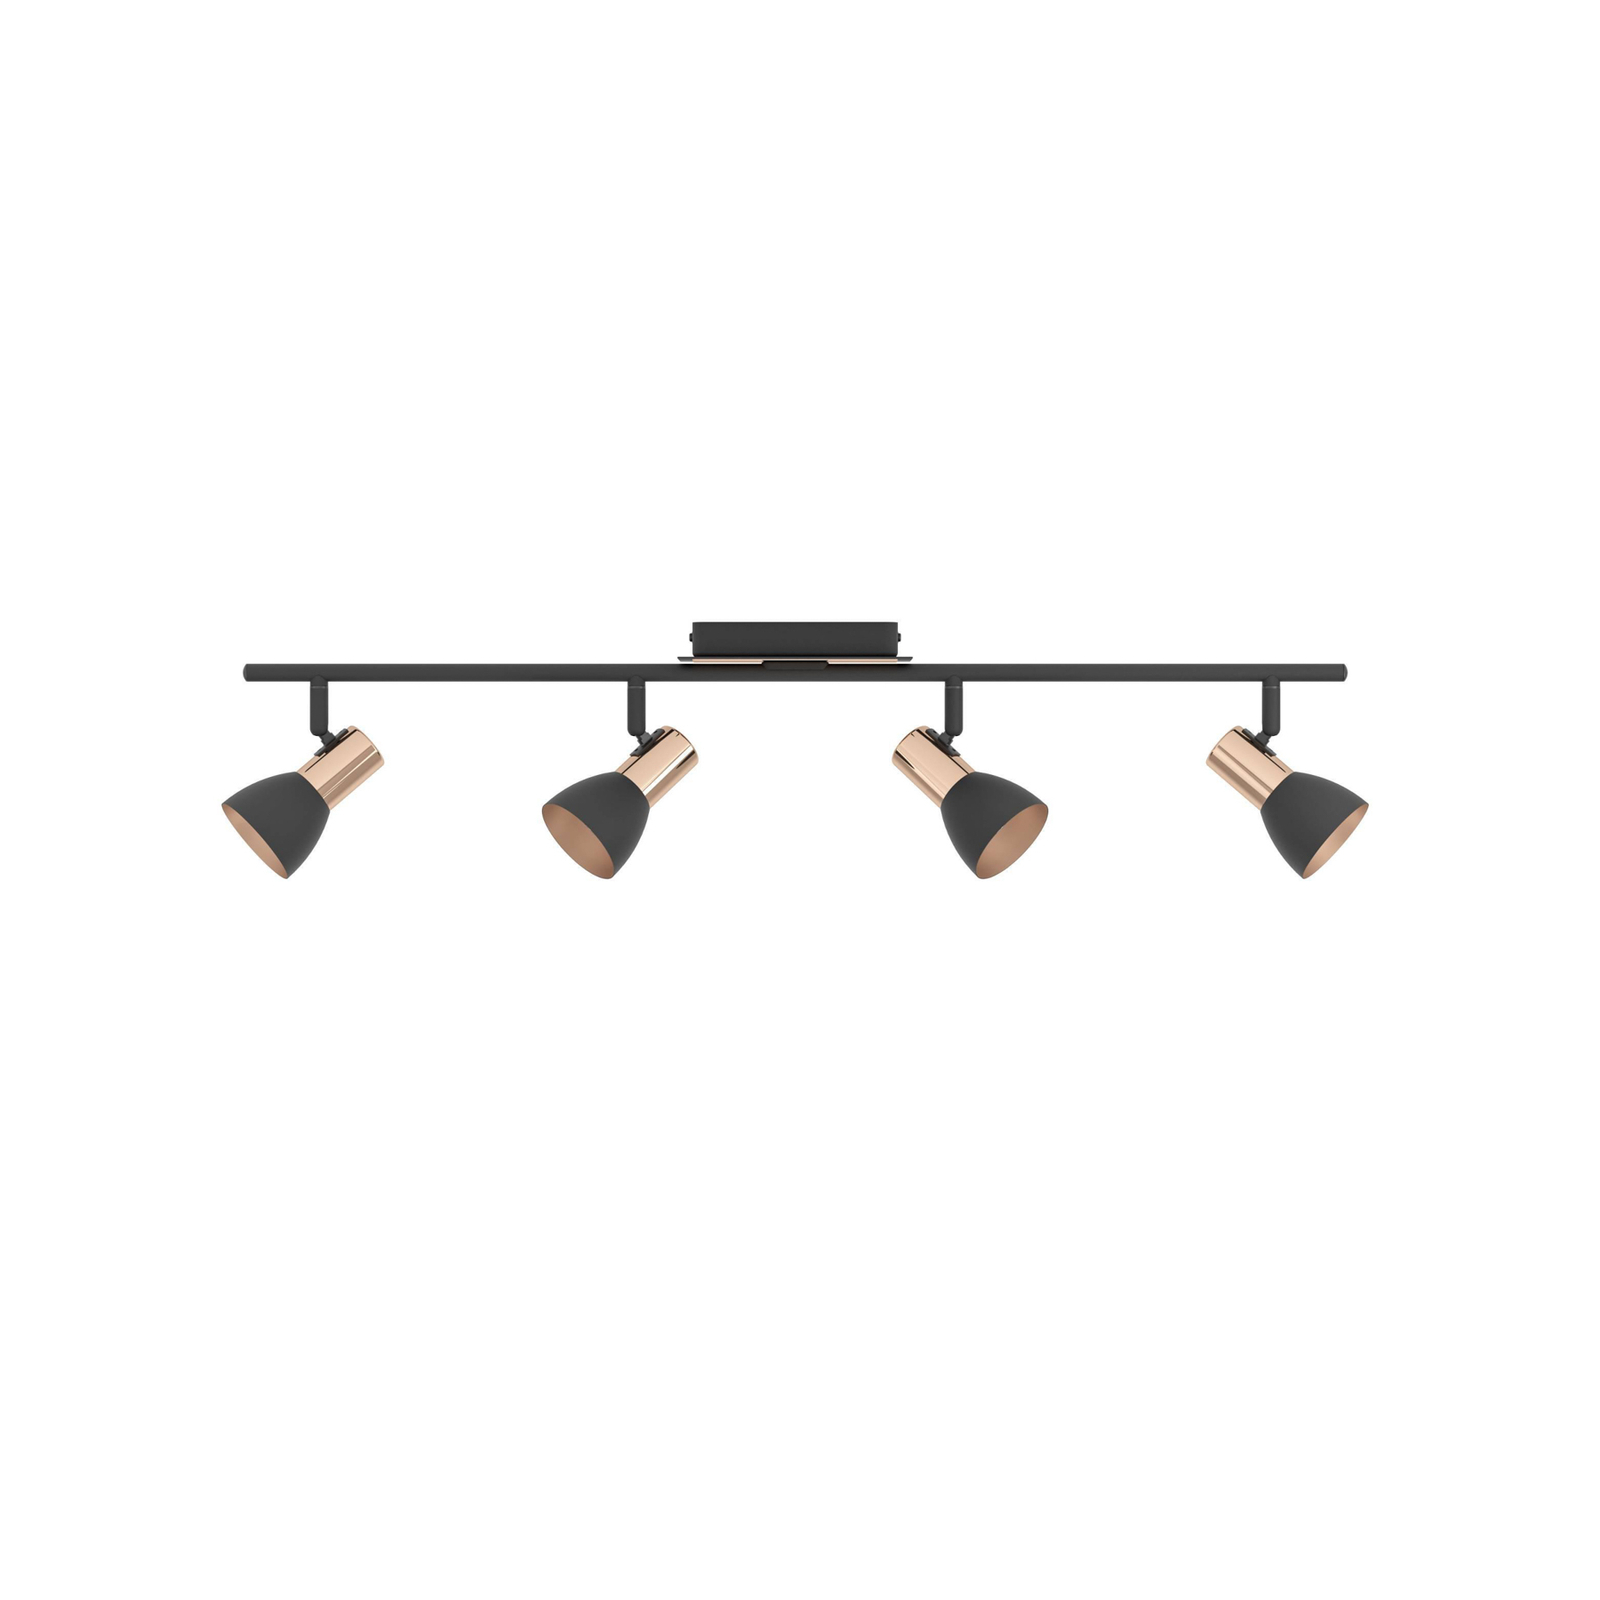 LED-Deckenstrahler Barnham, Länge 78 cm, schwarz/kupfer